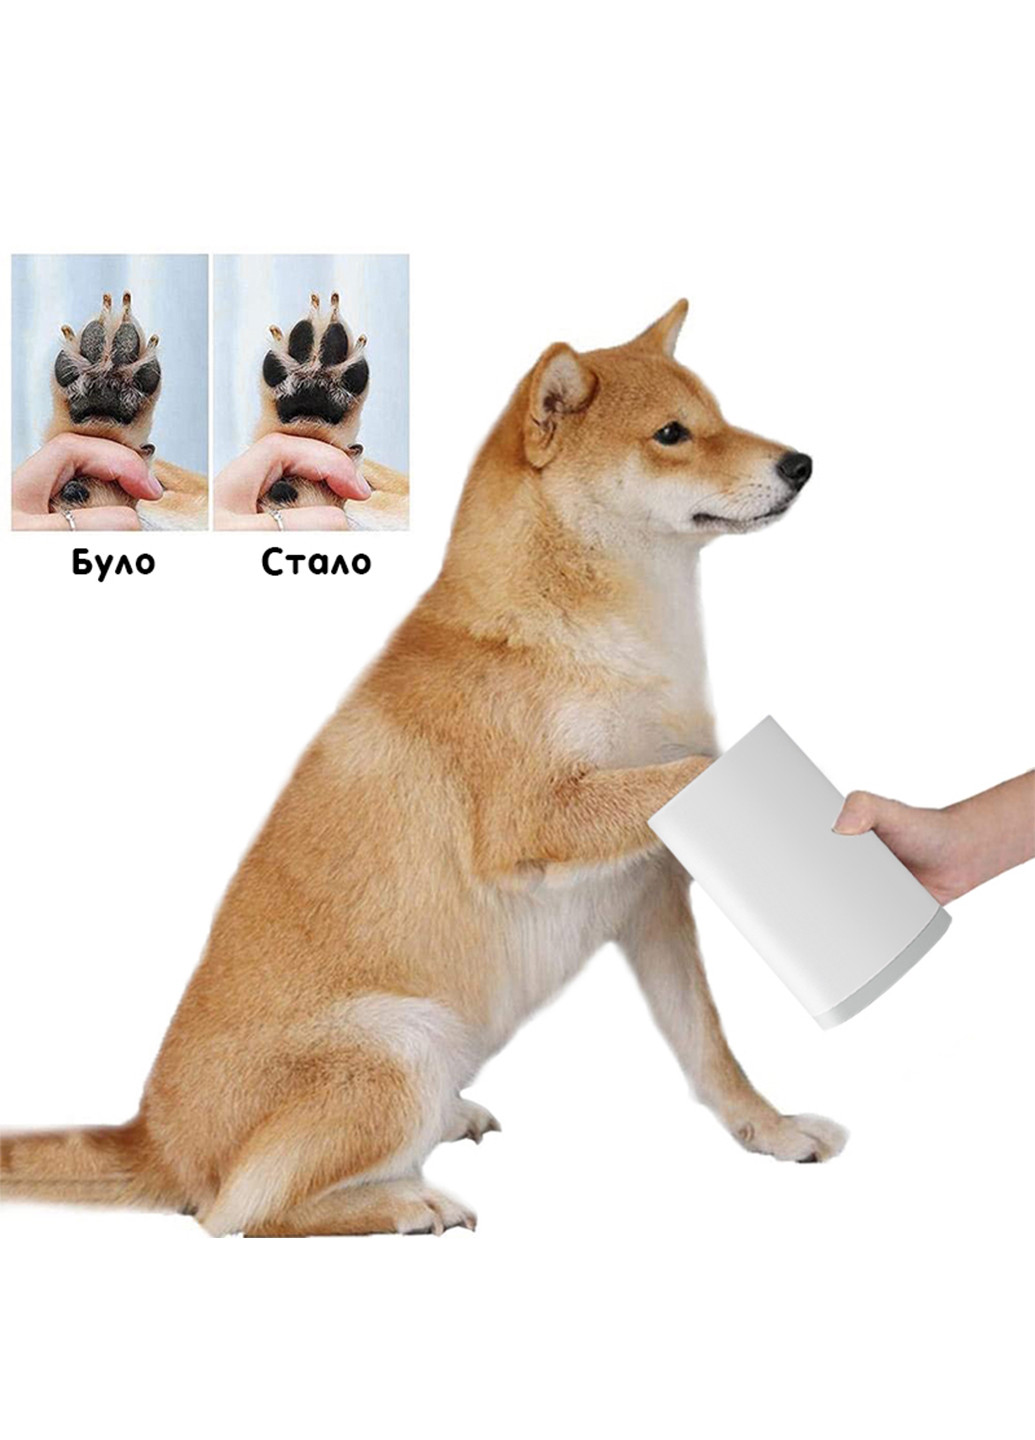 Лапомойка для собак, емкость для мытья лап домашних животных S (9x13 см) Carno